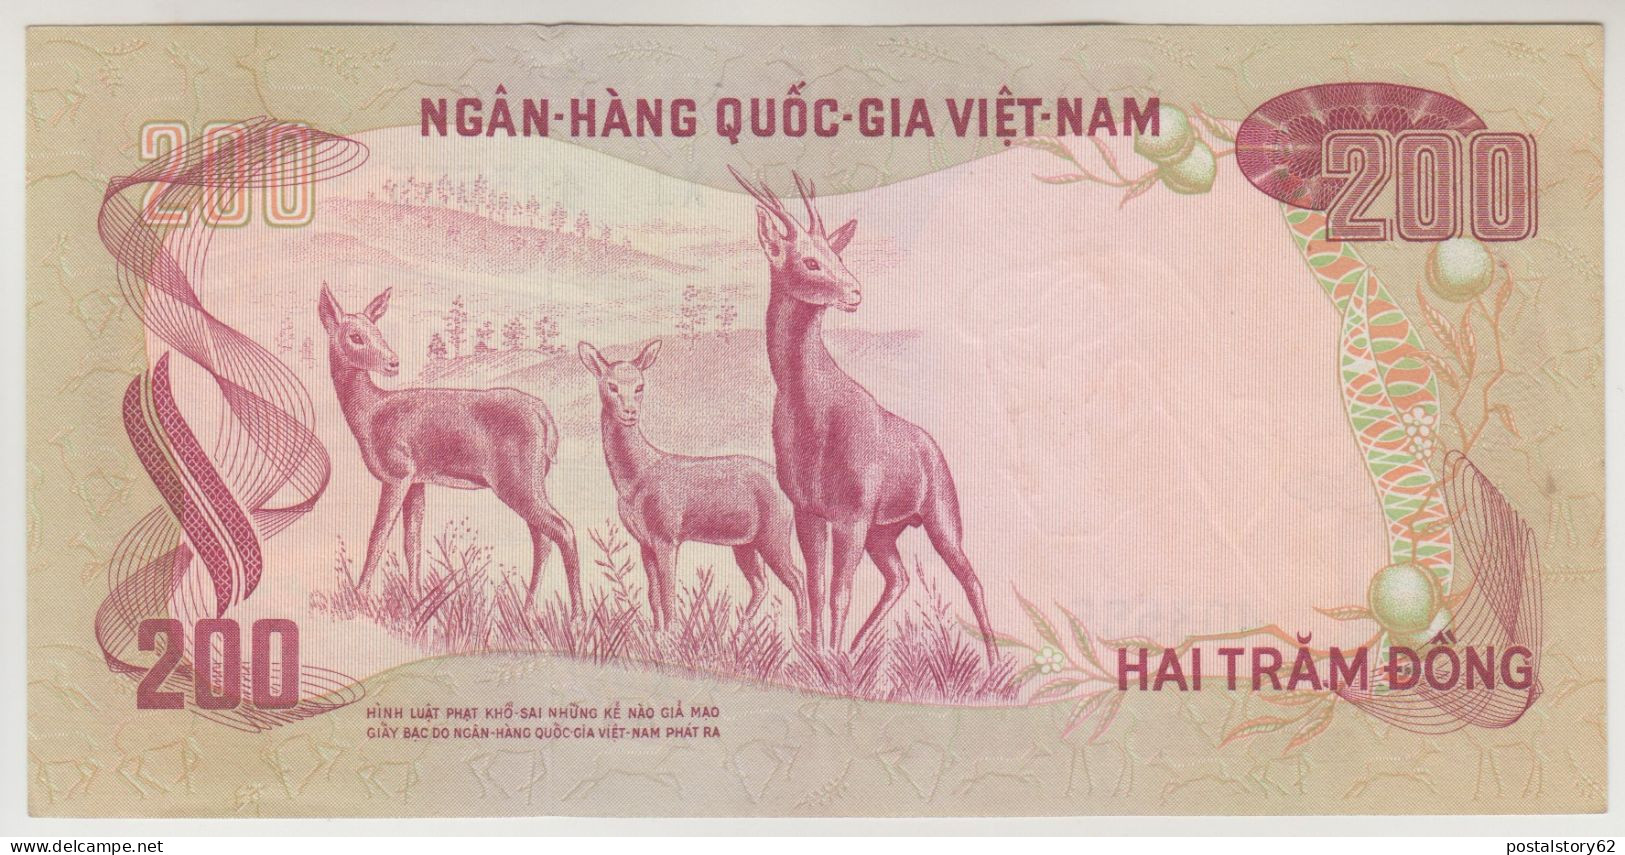 Vietnam Del Sud, Banconota 200 Dong 1972 ND, P32 FDS - Viêt-Nam